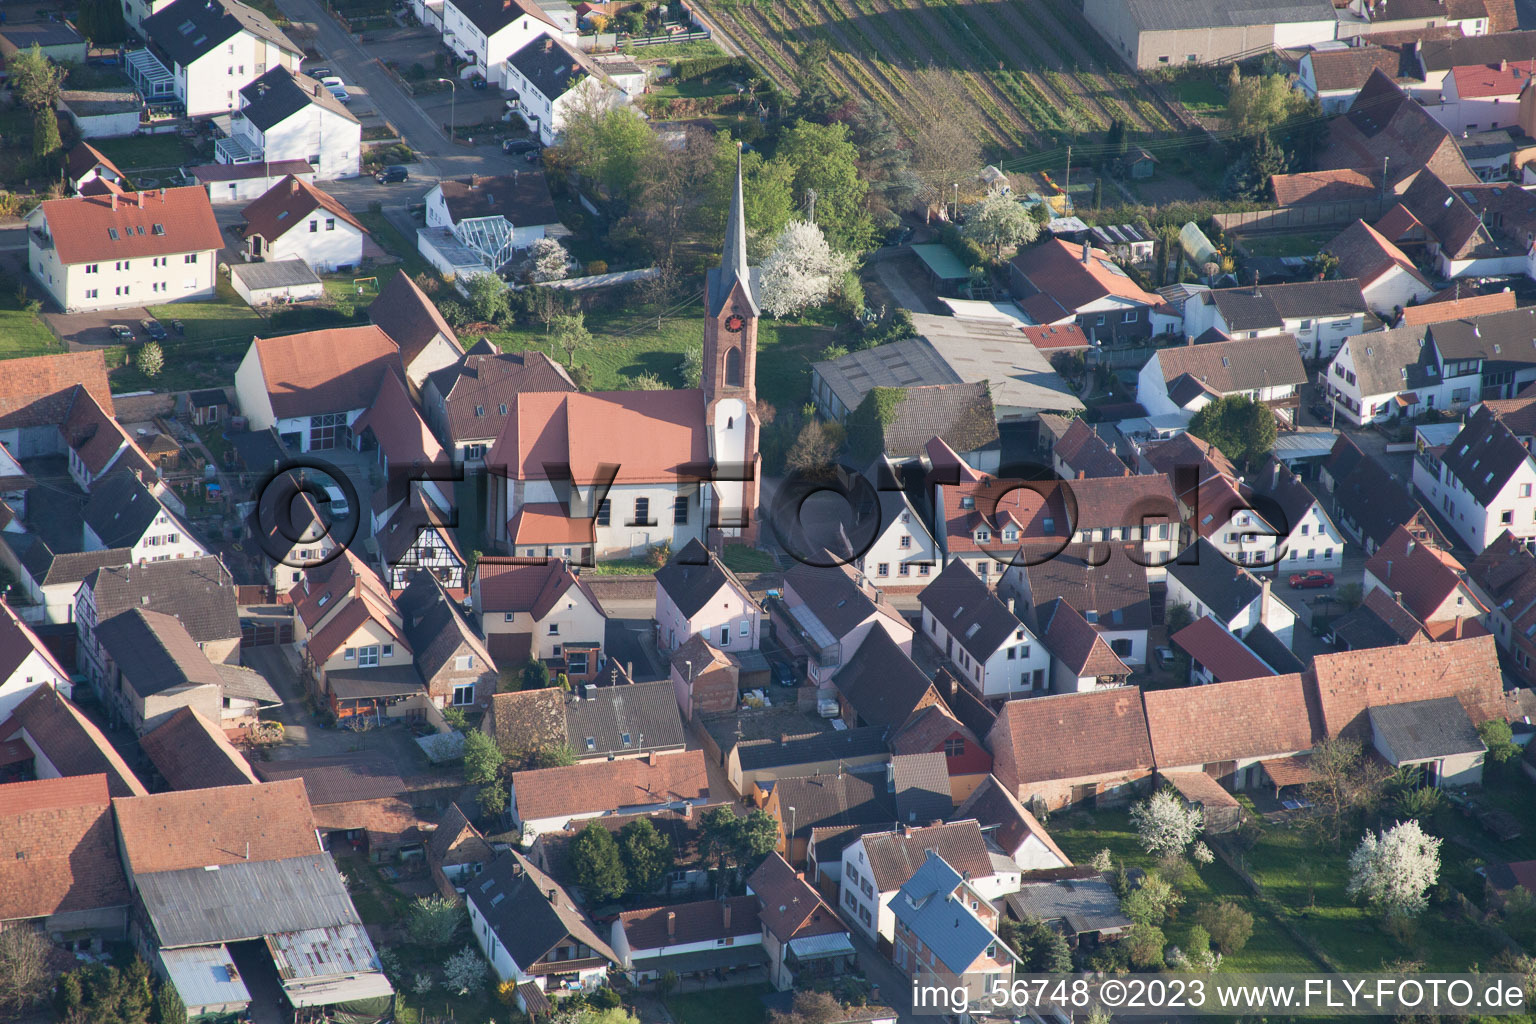 Hochstadt dans le département Rhénanie-Palatinat, Allemagne vue d'en haut